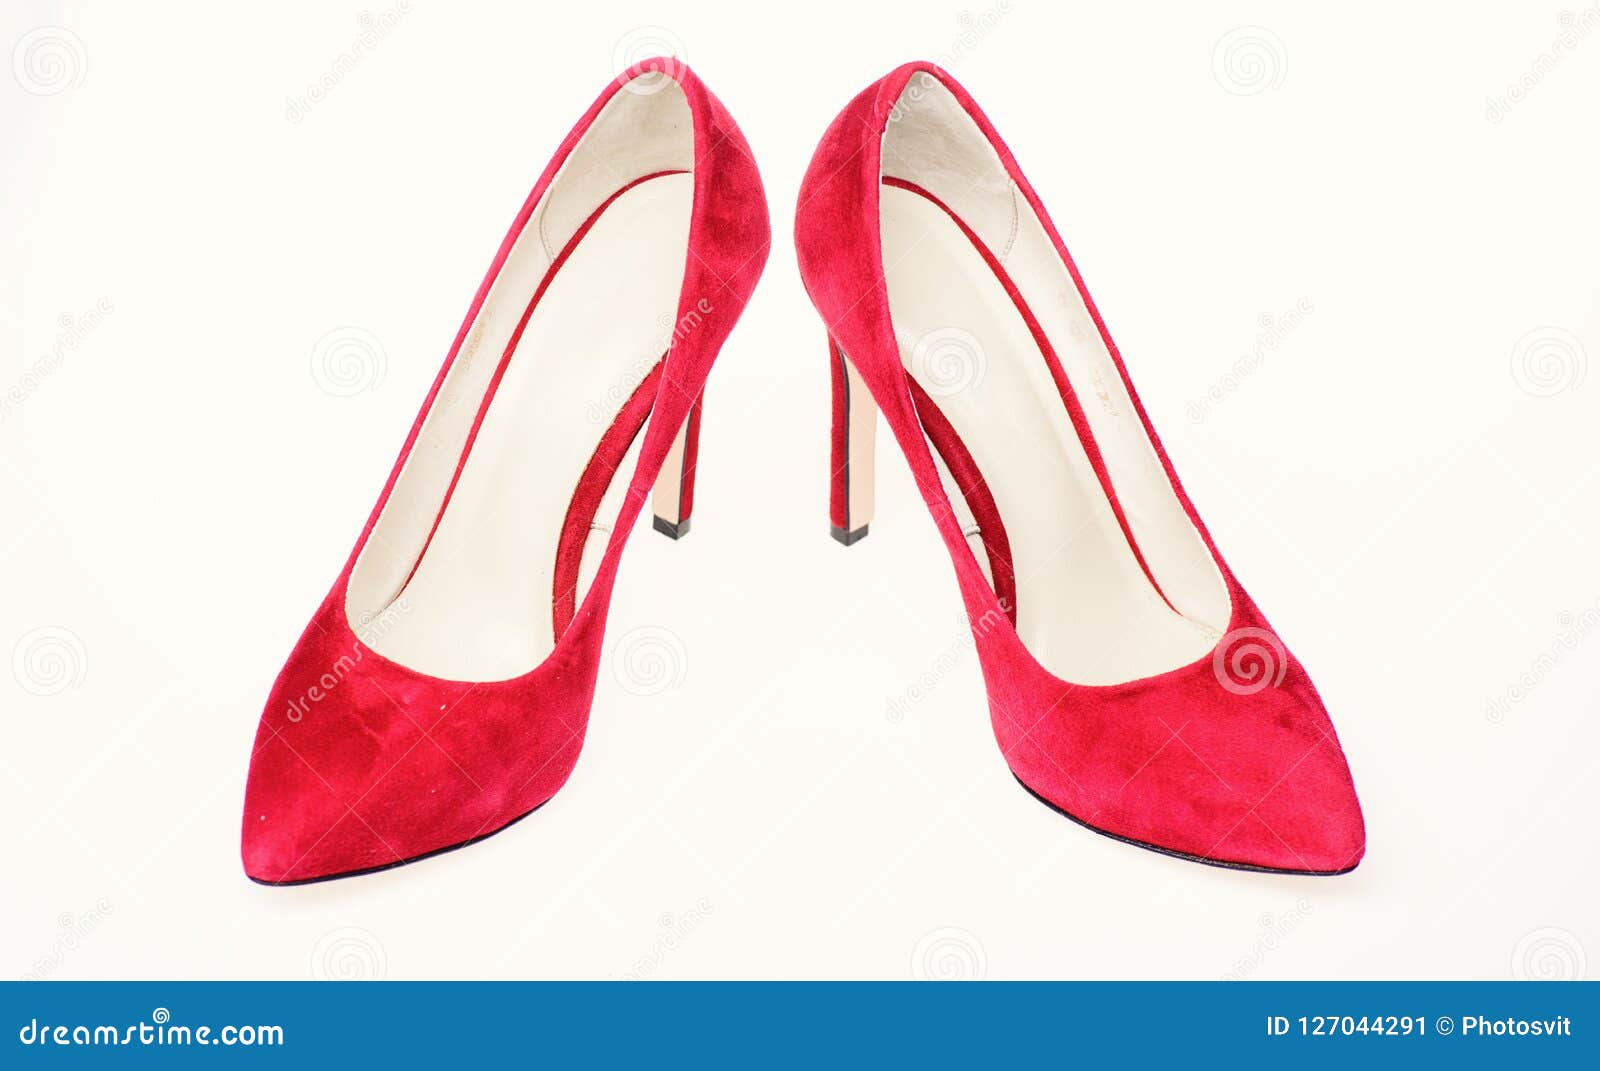 Para Las Mujeres Con Los Tacones Altos Finos El Estilete Elegante Calza Concepto Pares De Zapatos De Tacón Alto De Moda D Imagen de archivo - de desgaste, formal: 127044291